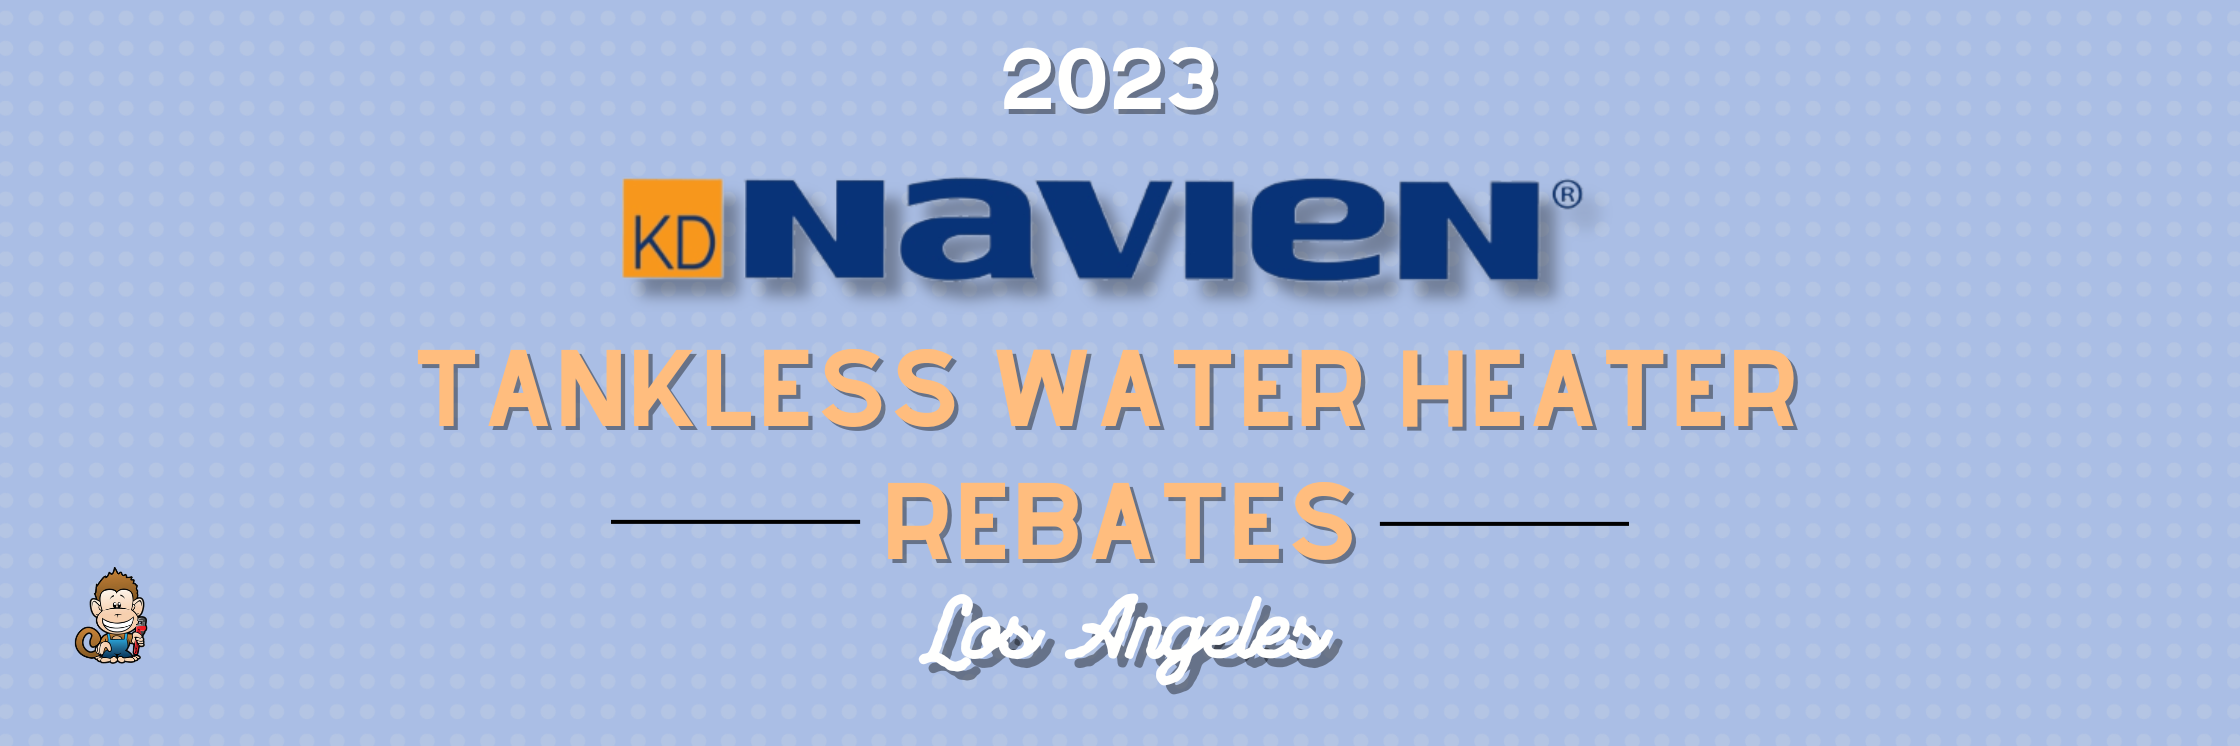 Nevada Tankless Water Heater Rebate